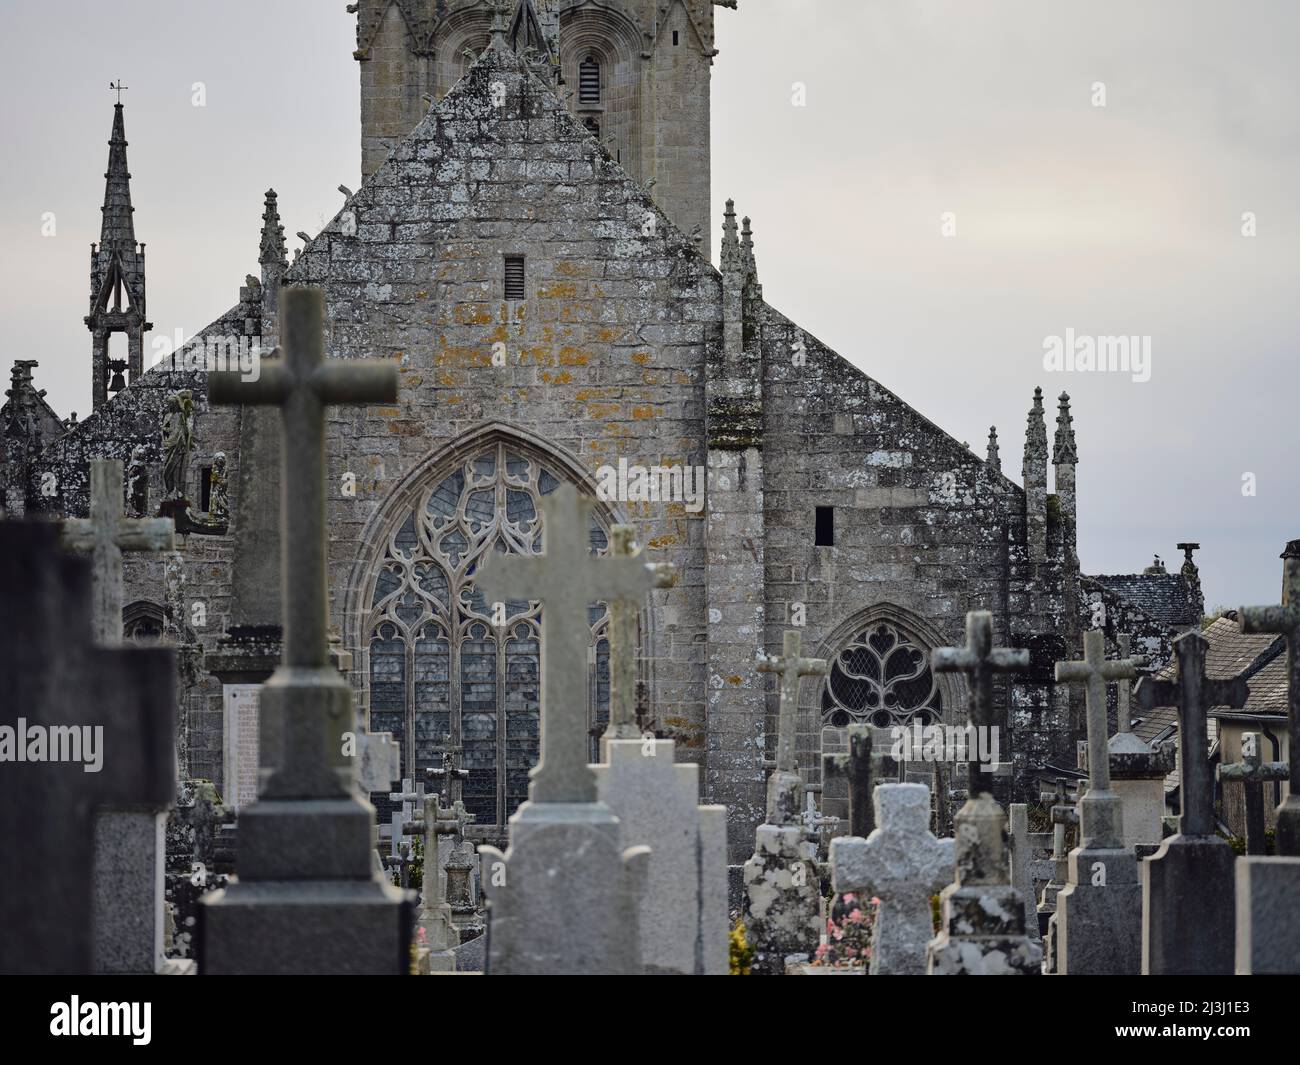 Die Église Saint-Ronan und der Friedhof in Locronan im Departement Finistère in der Bretagne. Locronans historische Kulisse ist in vielen Film- und Fernsehproduktionen zu sehen. Locronan ist ein beliebtes Ausflugsziel. Stockfoto